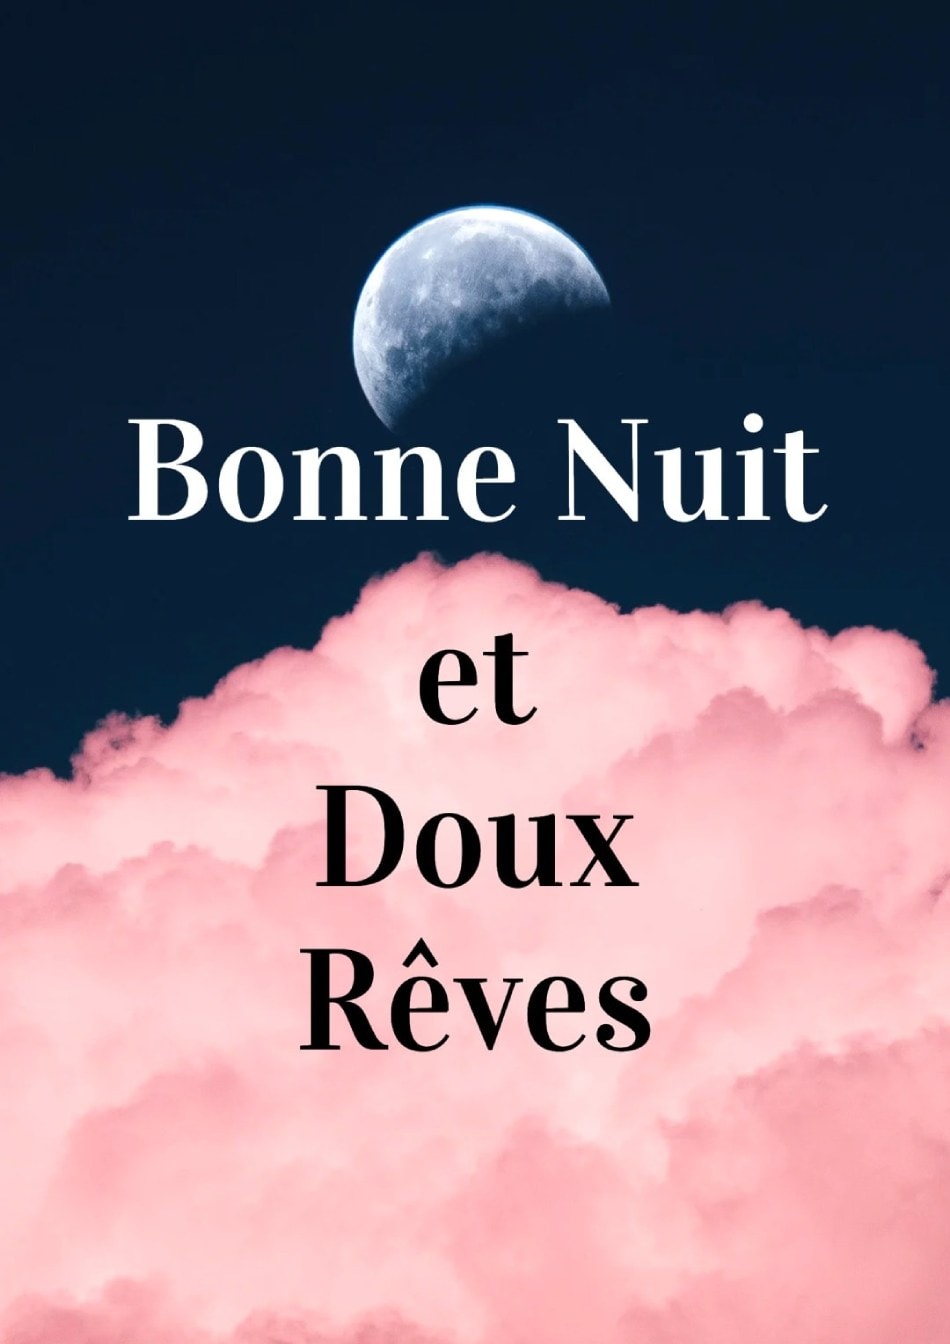 Lune partiellement cachée, nuages roses, texte 'Bonne Nuit et Doux Rêves'